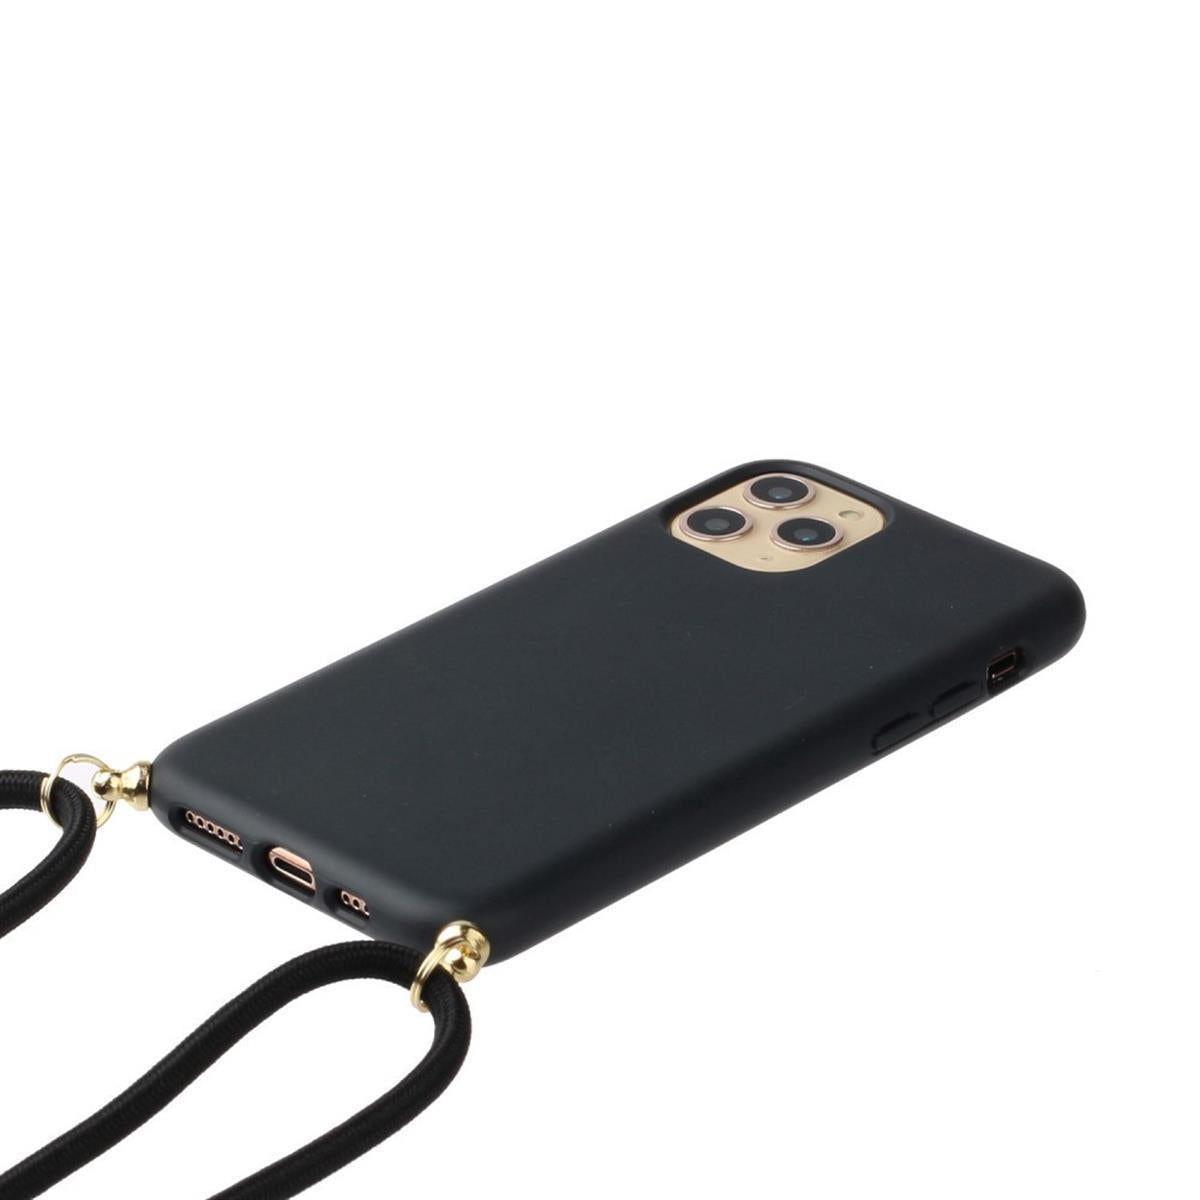 Hülle für Apple iPhone 13 Mini Handy Silikon Case Handykette Band Schnur Schwarz